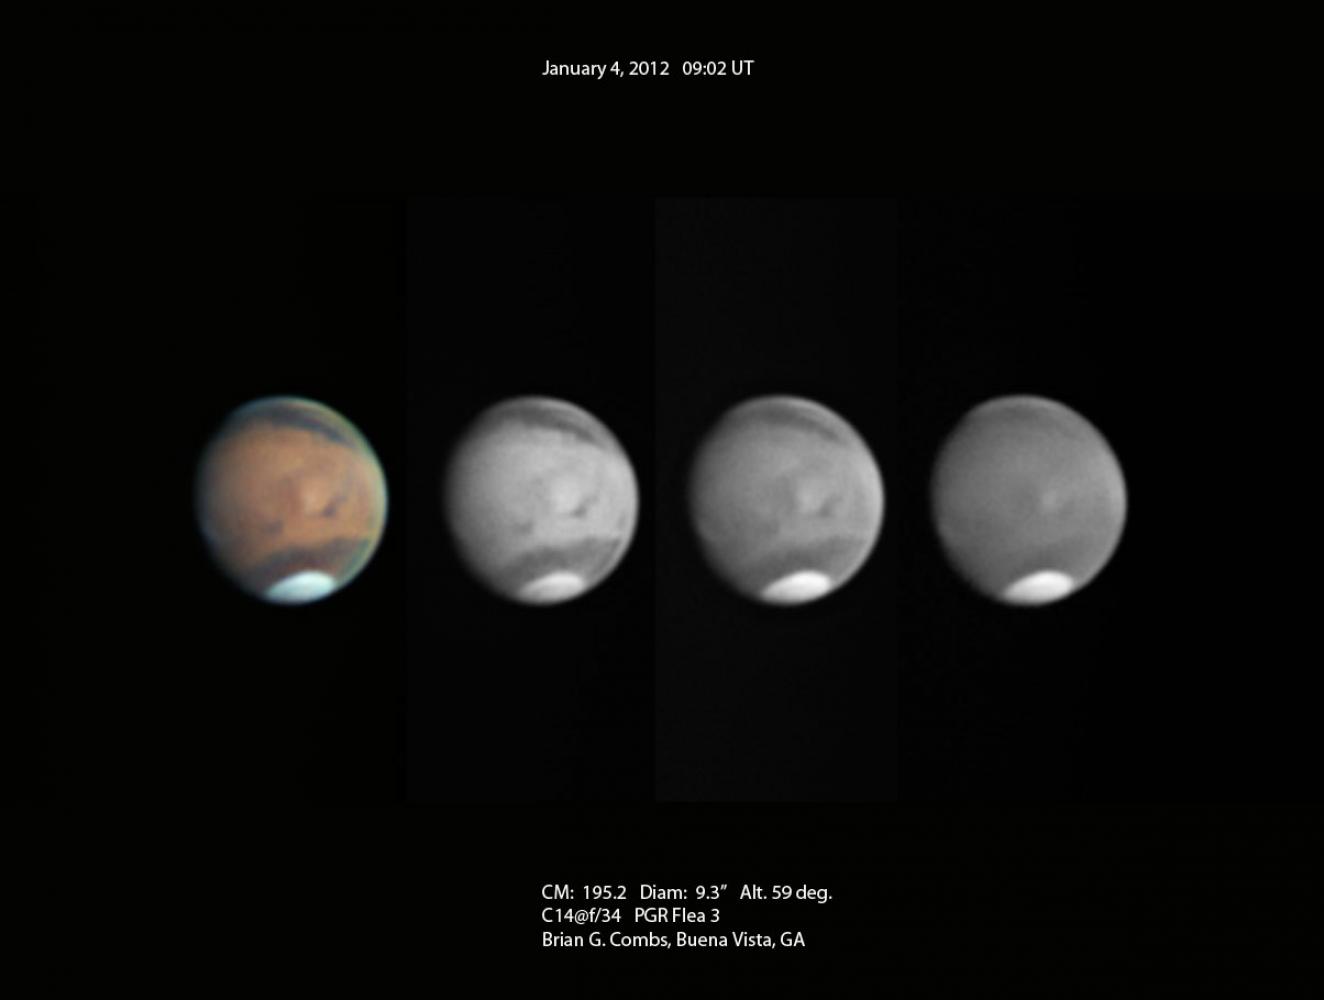 Mars-January 4, 2012